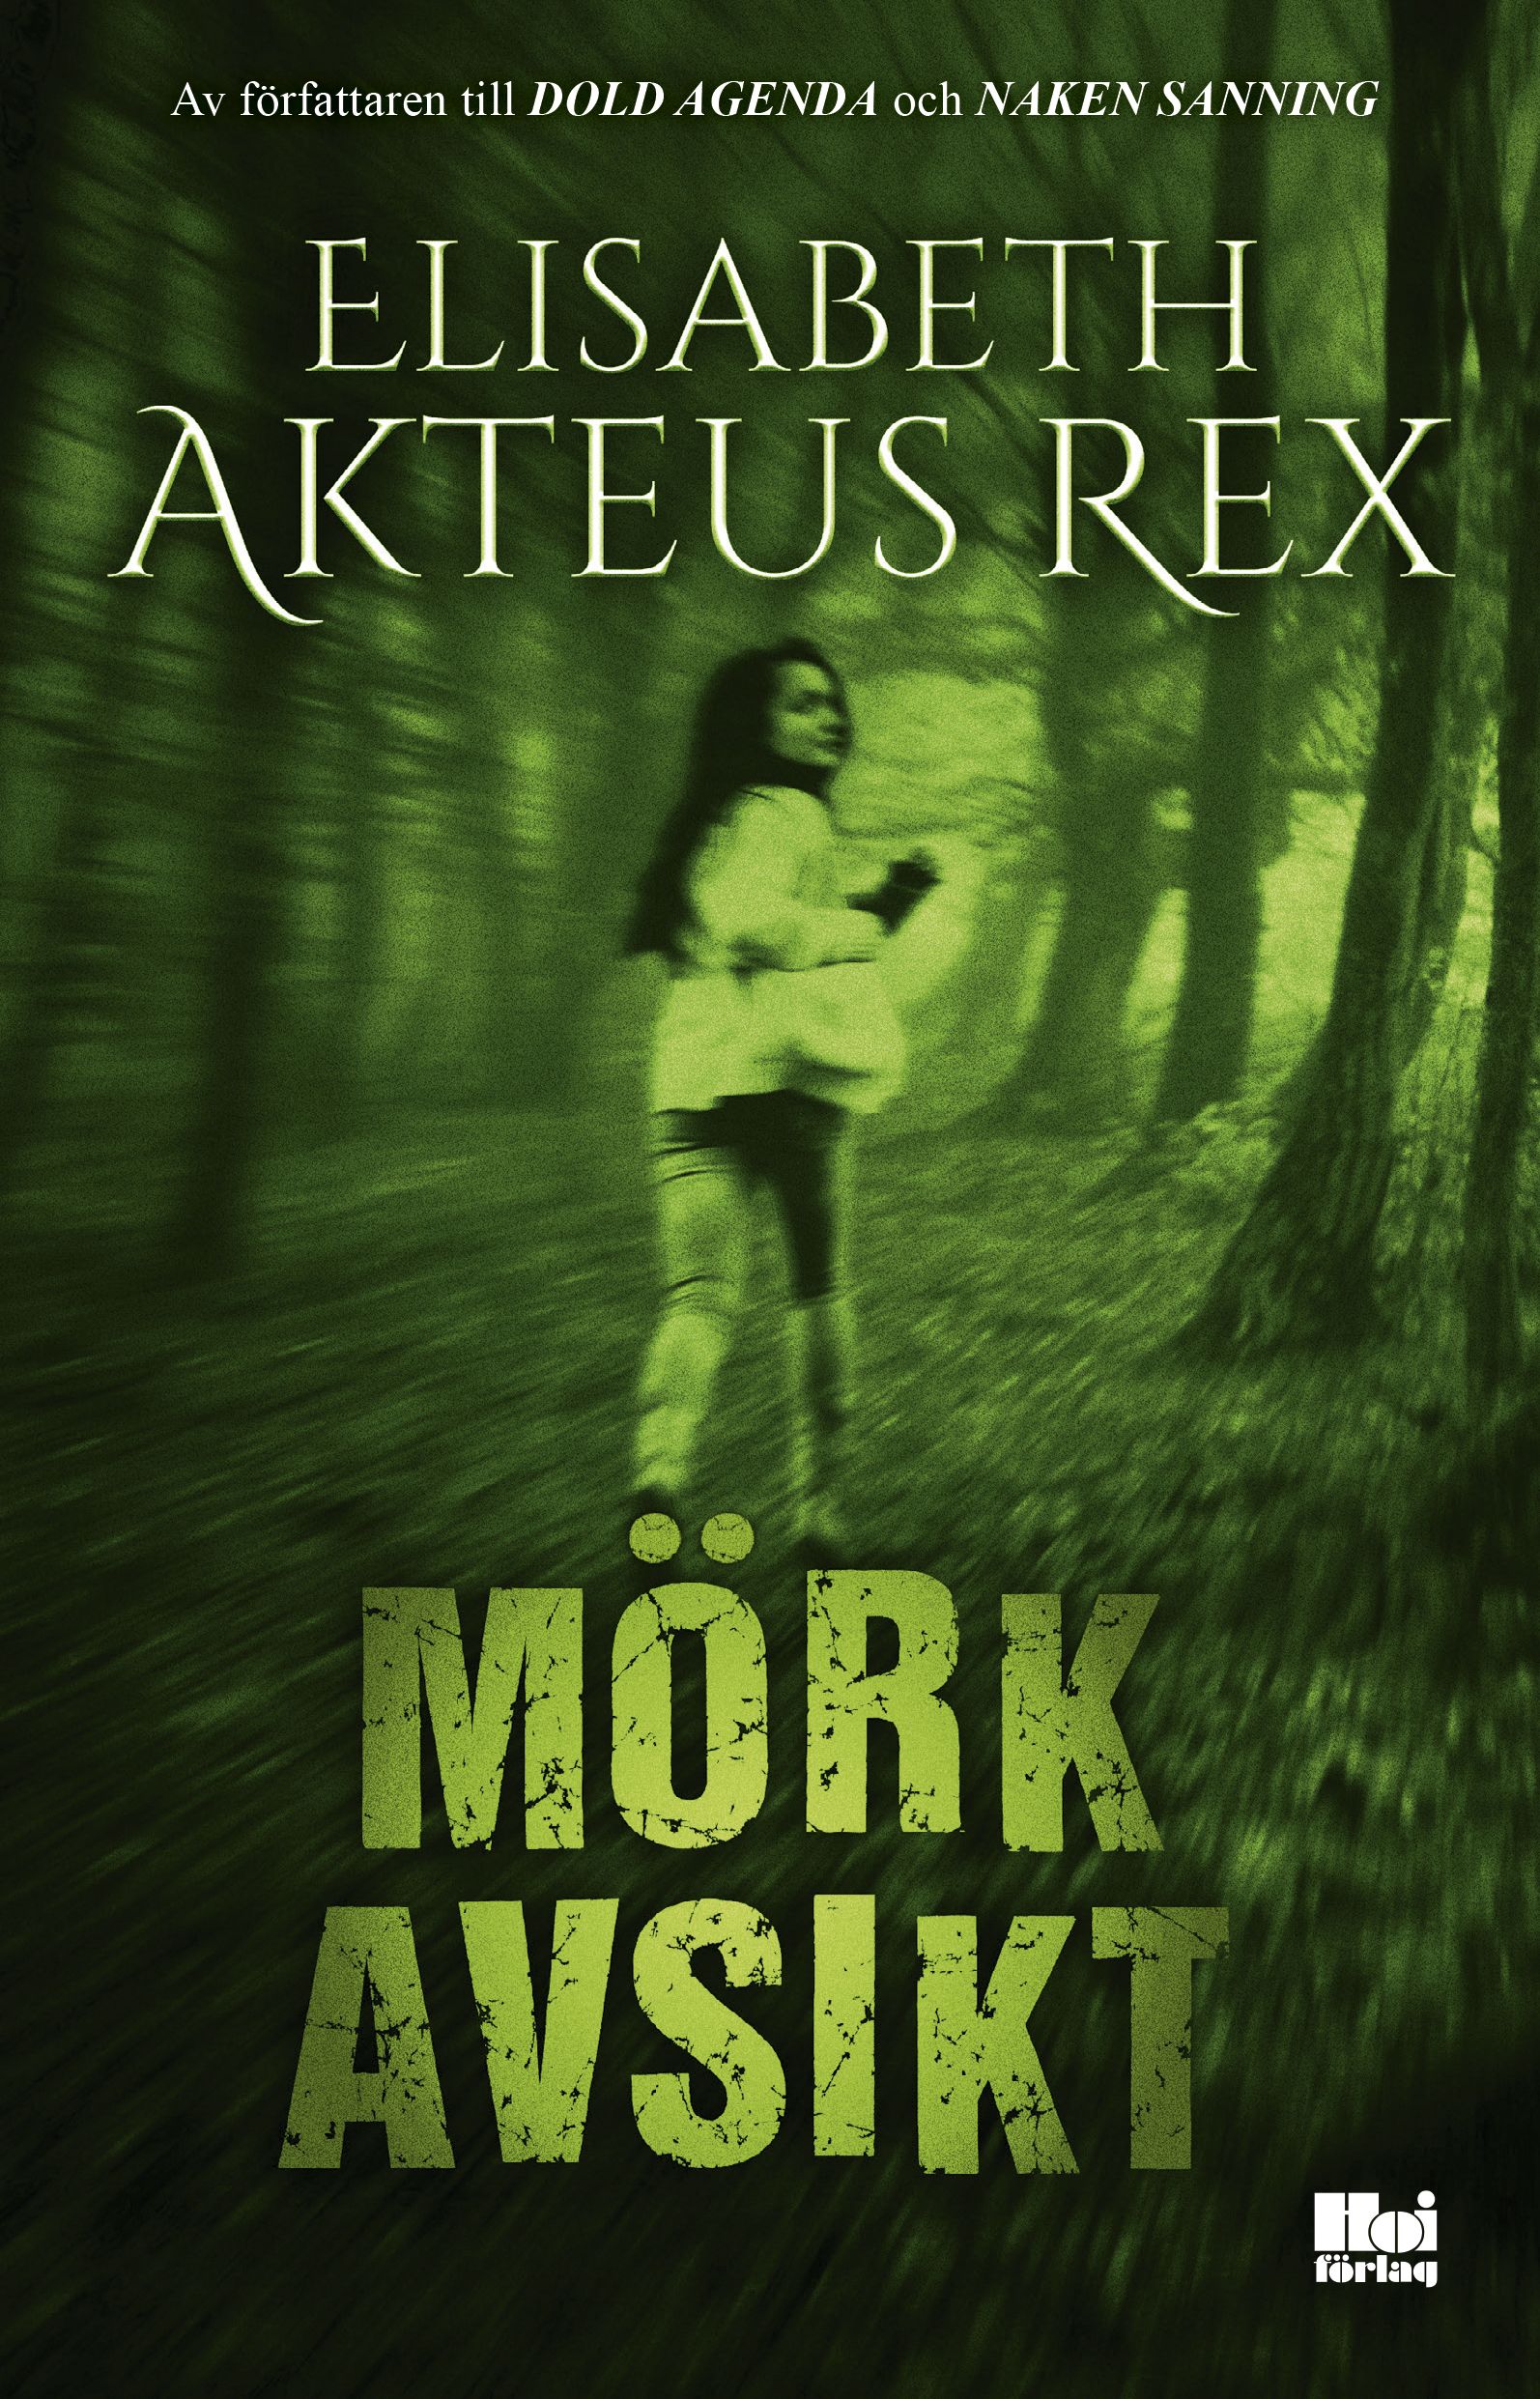 Mörk avsikt, eBook by Elisabeth Akteus Rex